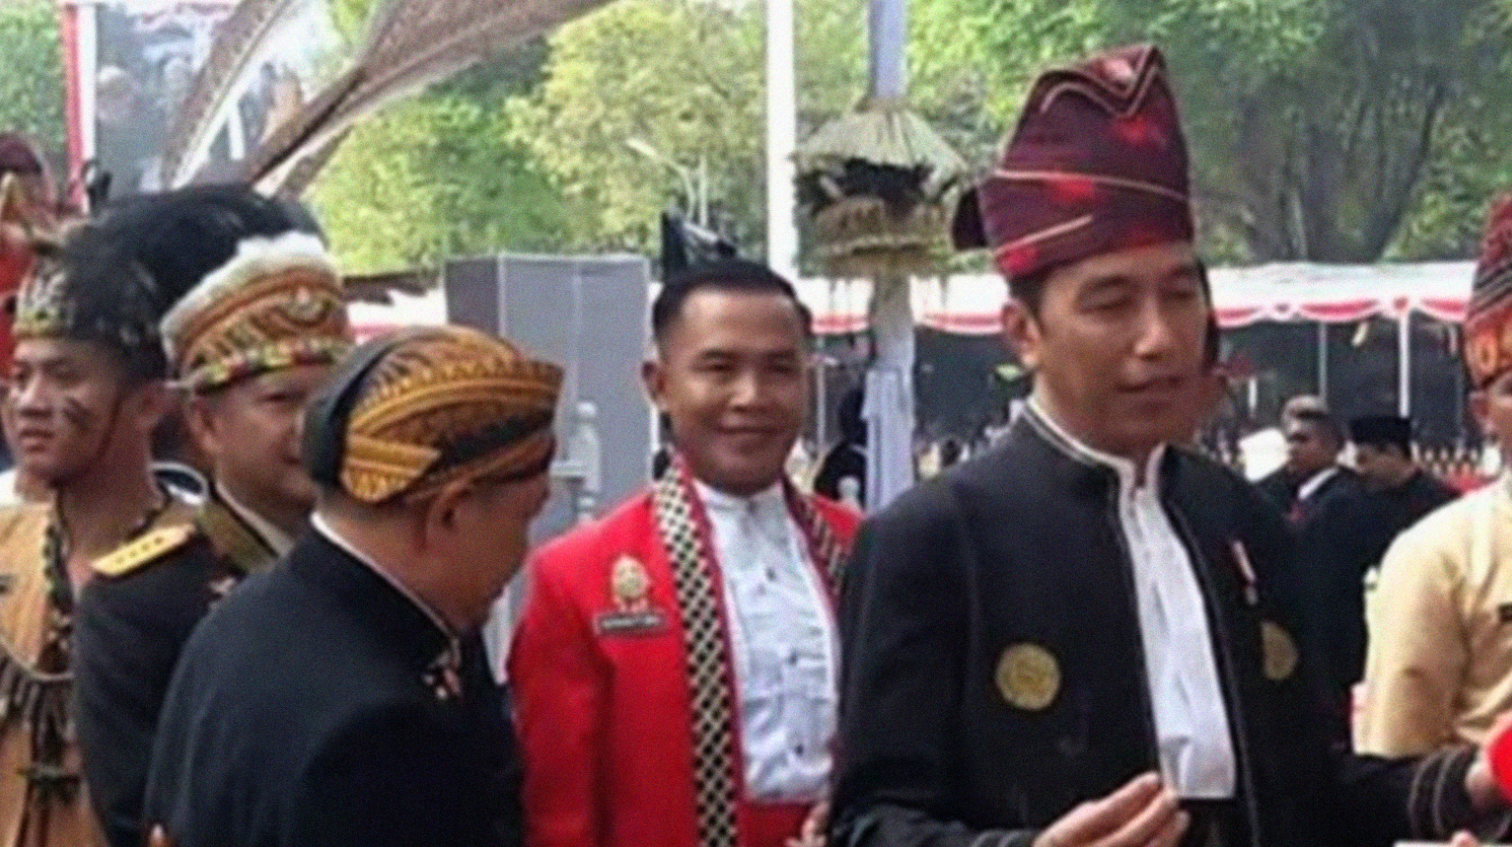 WARNA-WARNI: Presiden Jokowi mengenakan pakaian adat Kalimantan Selatan saat memimpin upacara Detik-Detik Proklamasi Kemerdekaan RI di Istana Negara, Kamis (17/8)